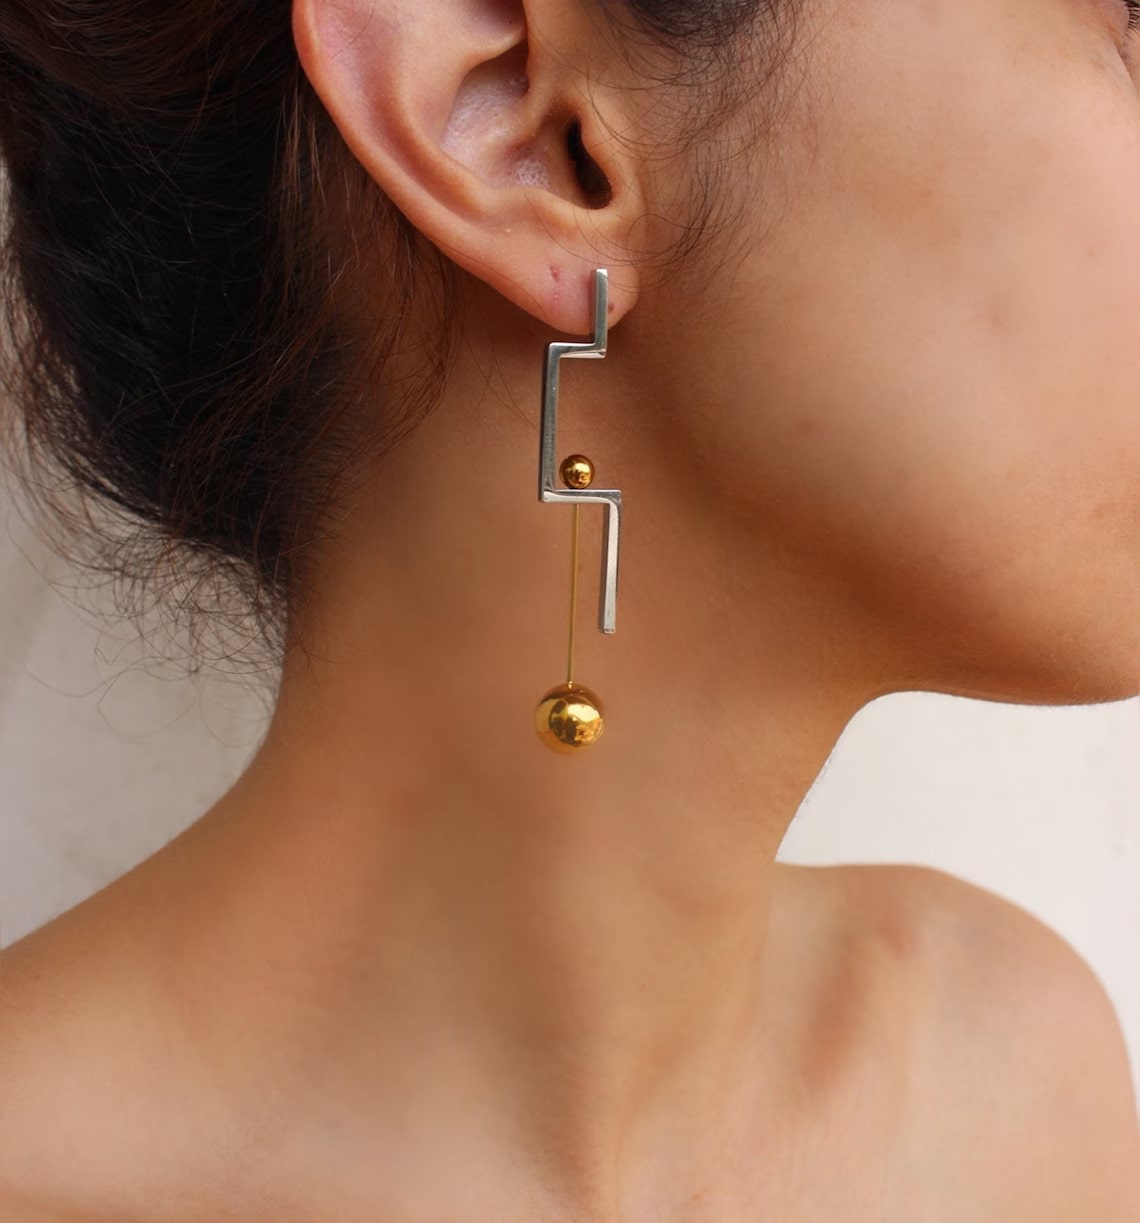 modern geometric steel earring on the woman's ear